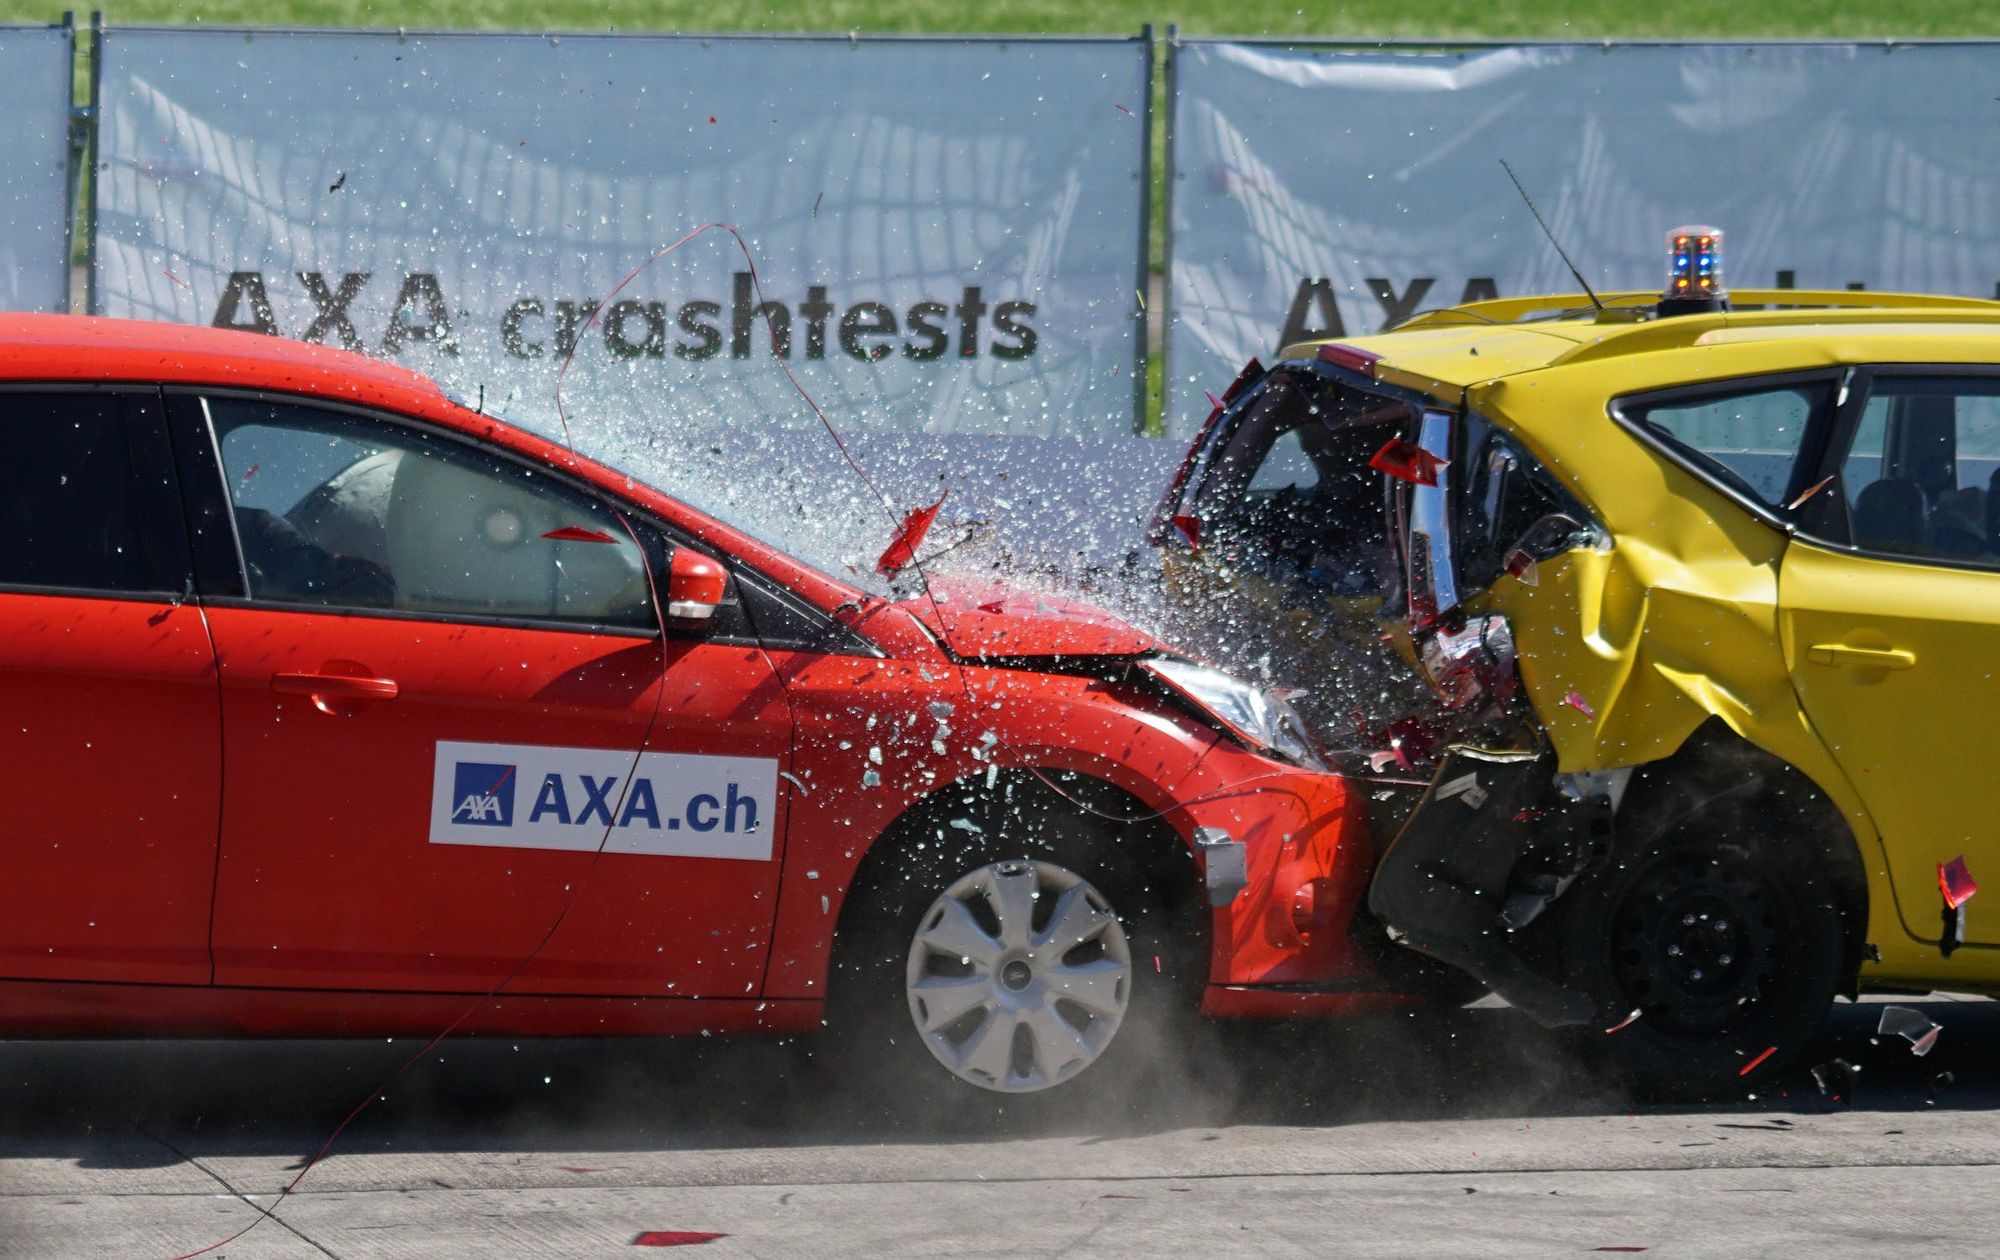 a red car crashing into a yellow car